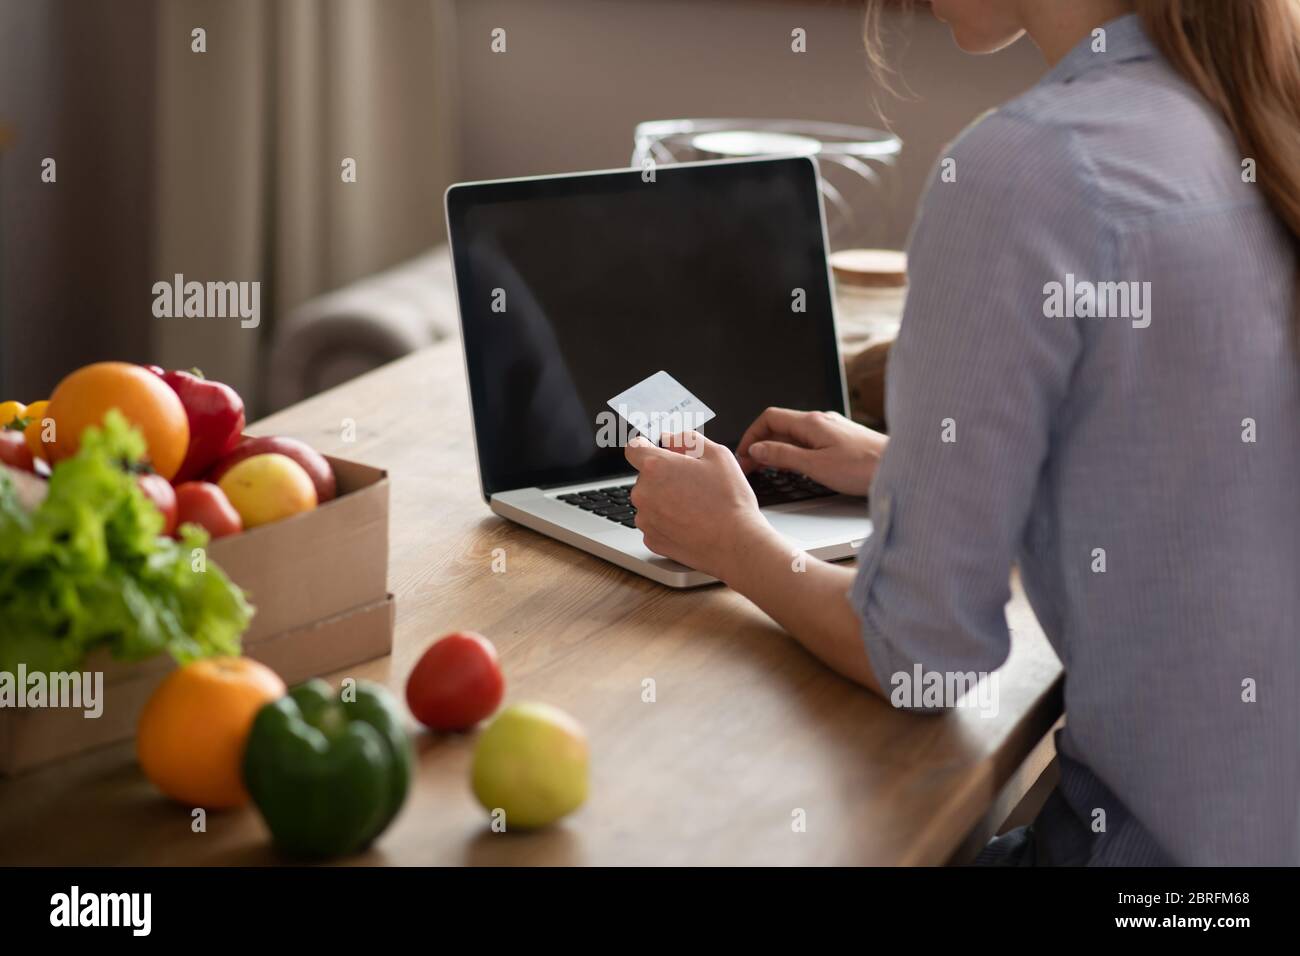 Fille en homowear grise tenant une carte de crédit dans sa main et payant en ligne Banque D'Images